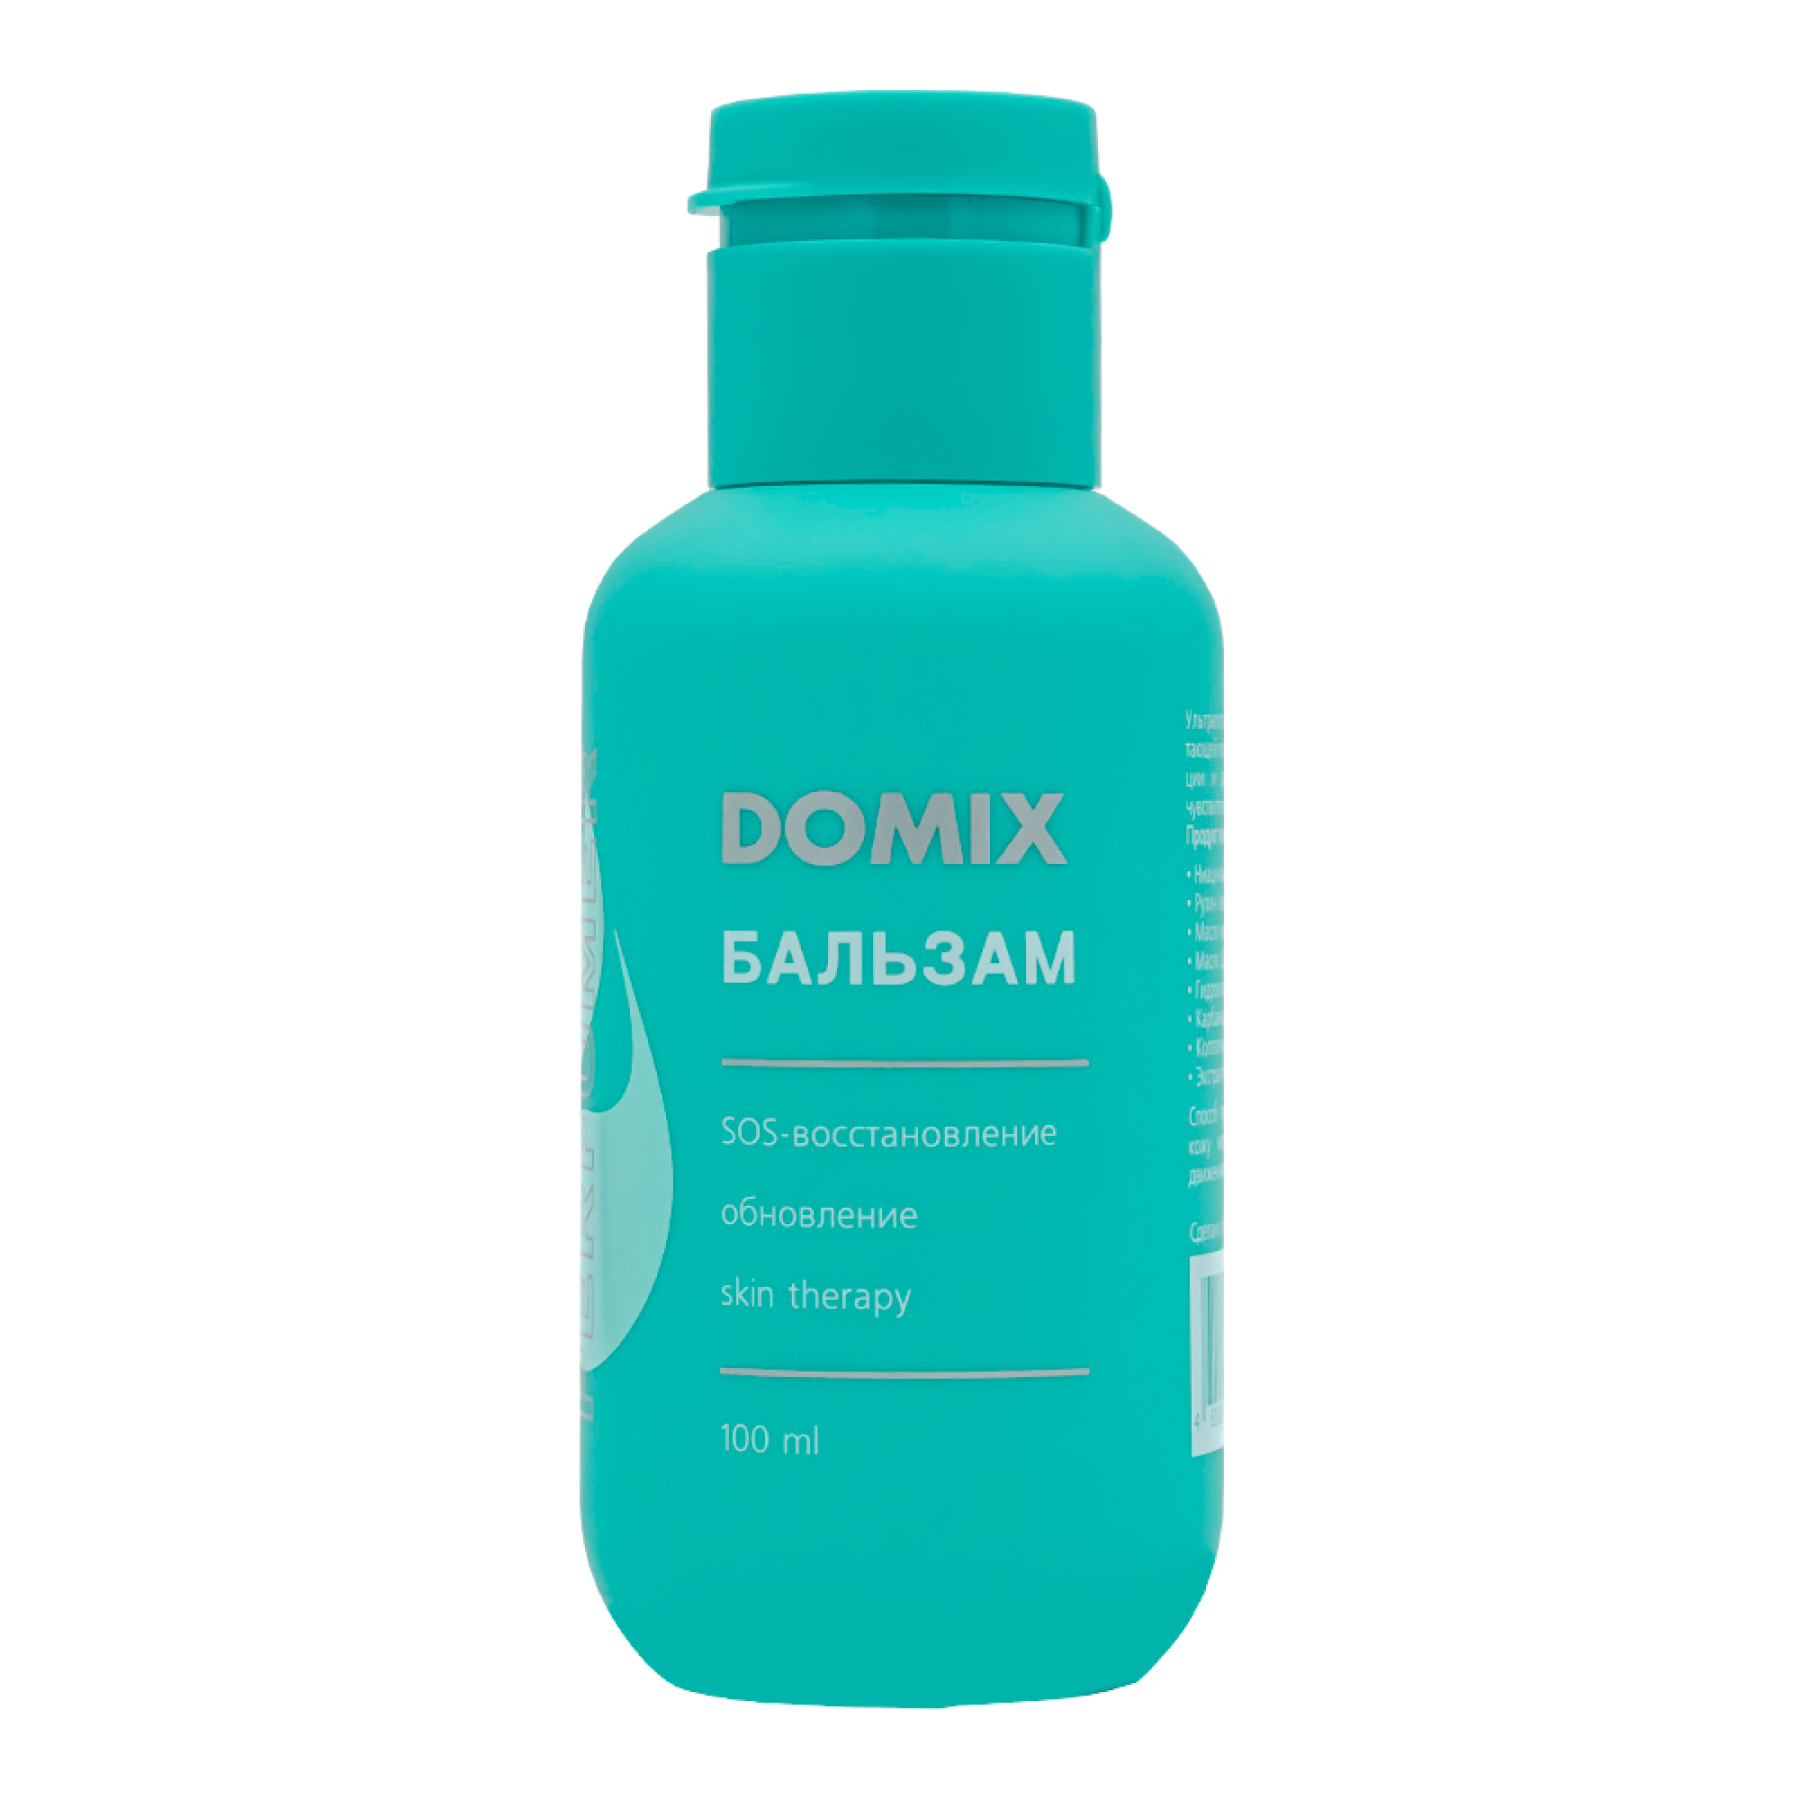 Бальзам Domix PERFUMER, 100 мл domix dgp крем для рук и тела sensational solution увлажняющий вишневый аромат 260